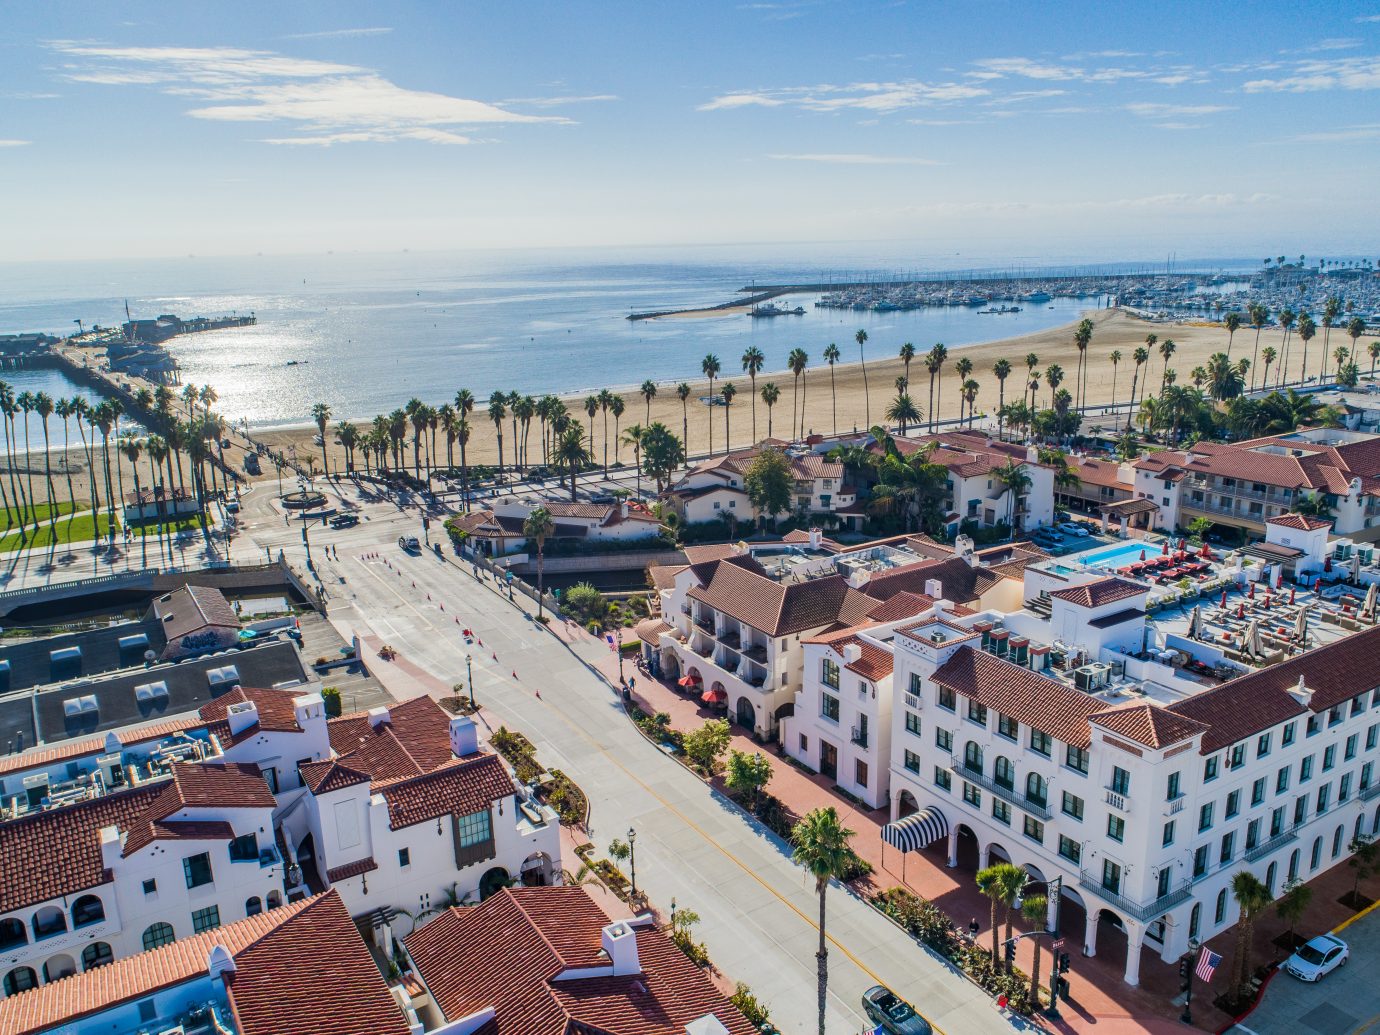 Aerial of Hotel Californian, Santa Barbara, CA